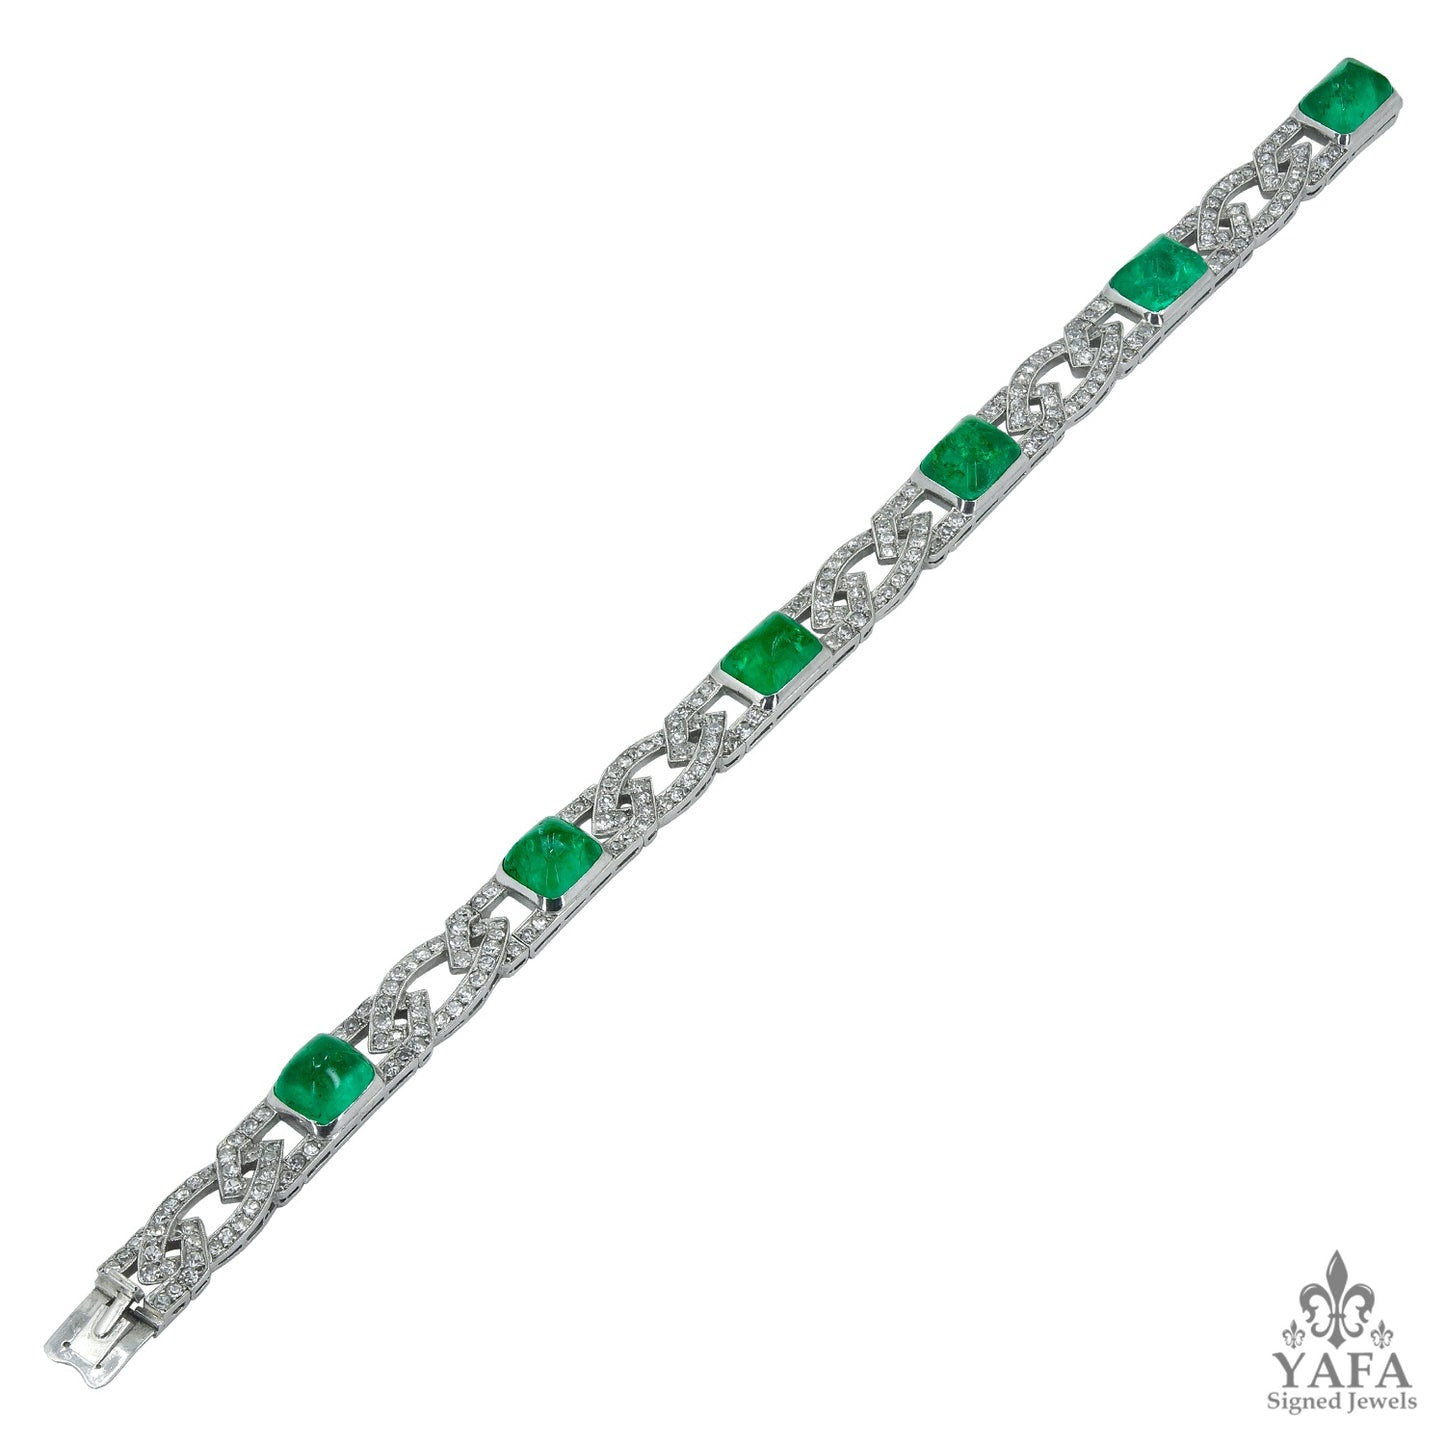 VAN CLEEF & ARPELS Sugarloaf Emerald Diamond Deco Bracelet